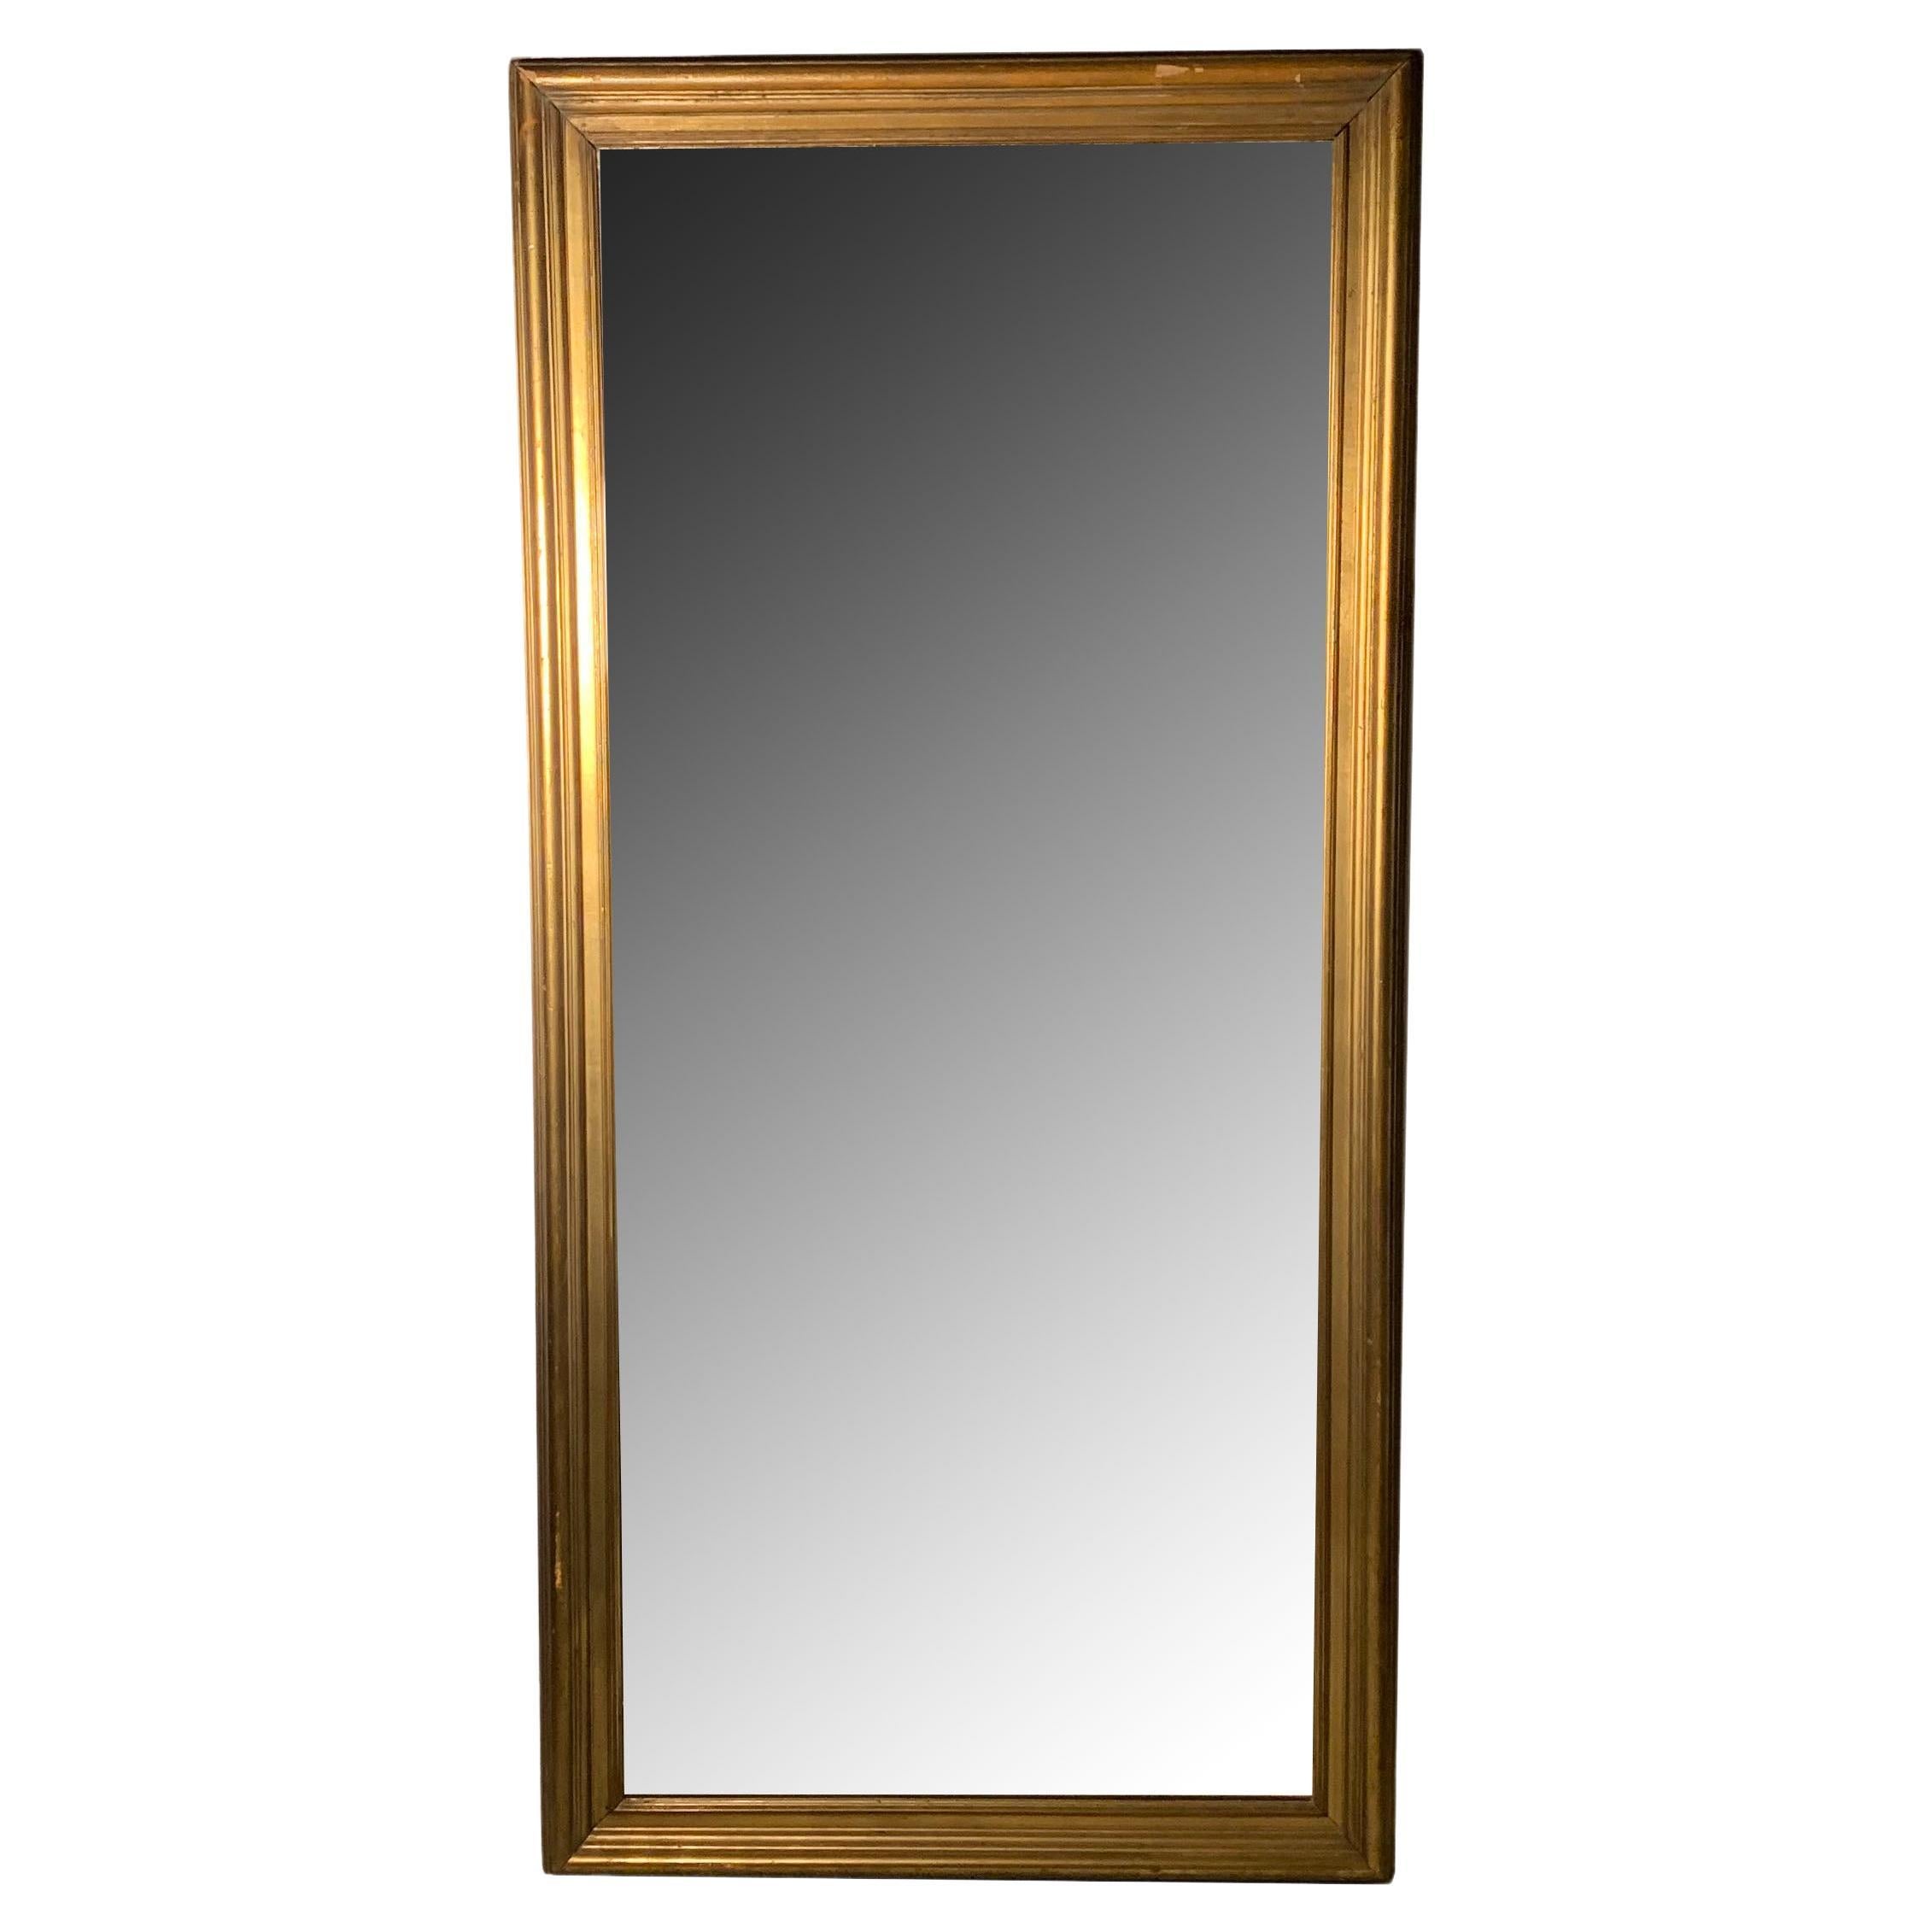 Grand cadre ou miroir antique doré